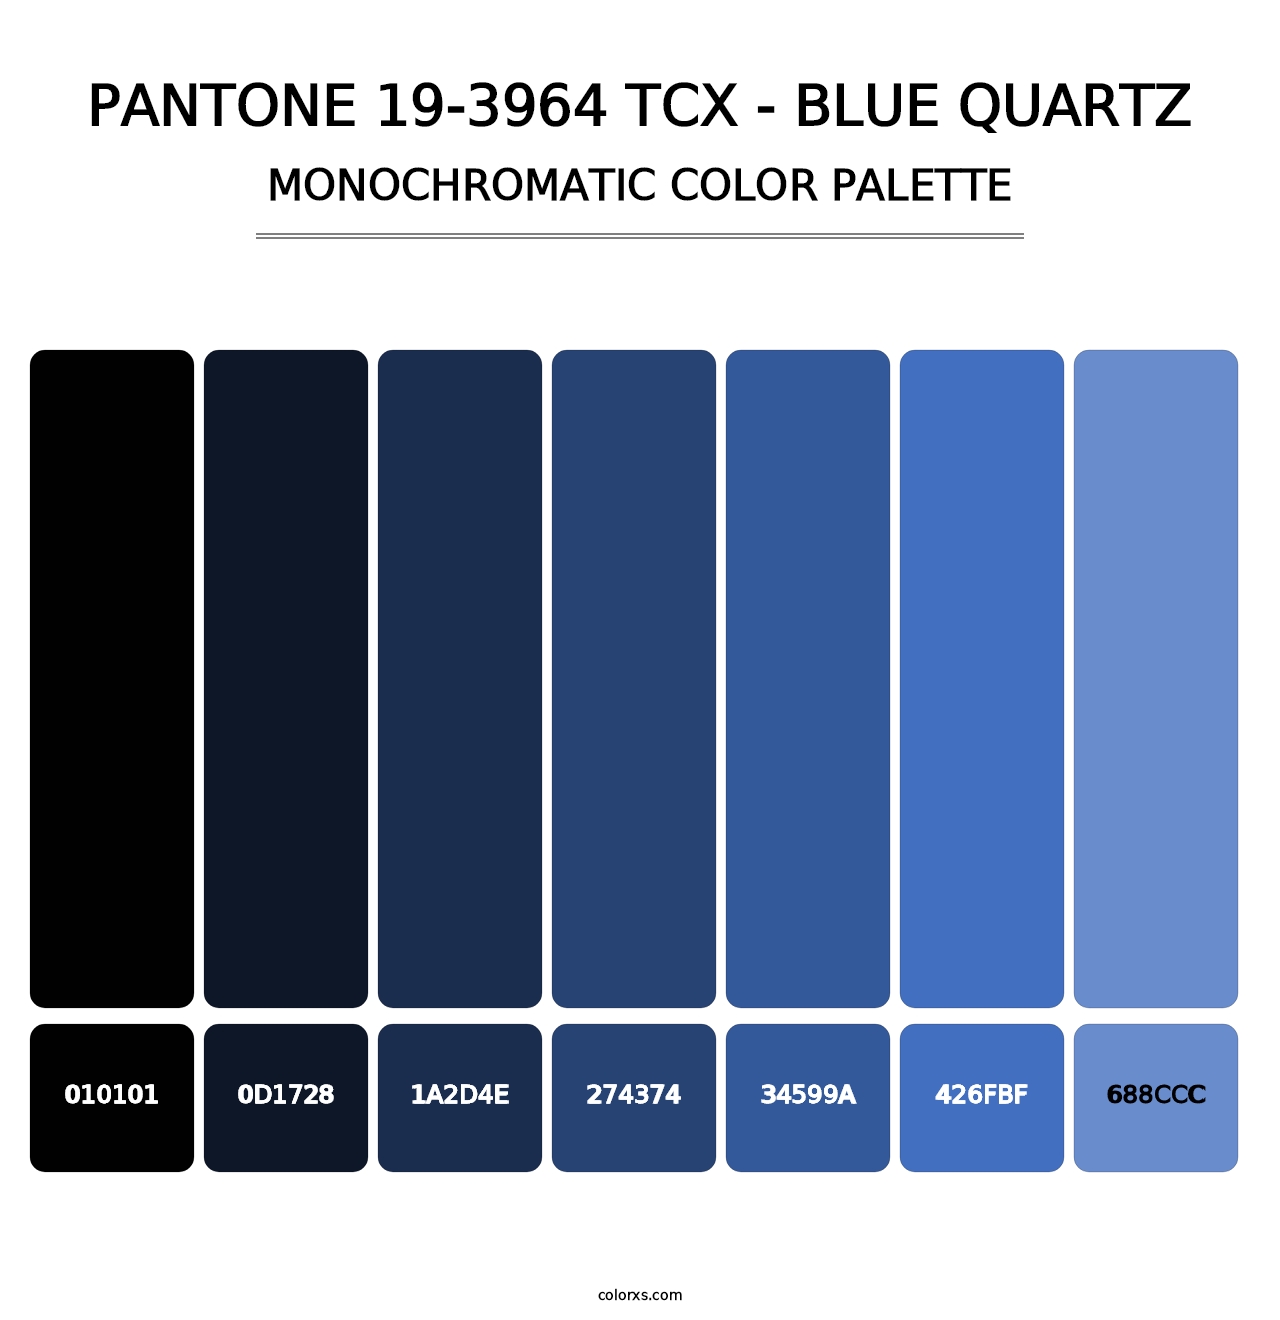 PANTONE 19-3964 TCX - Blue Quartz - Monochromatic Color Palette